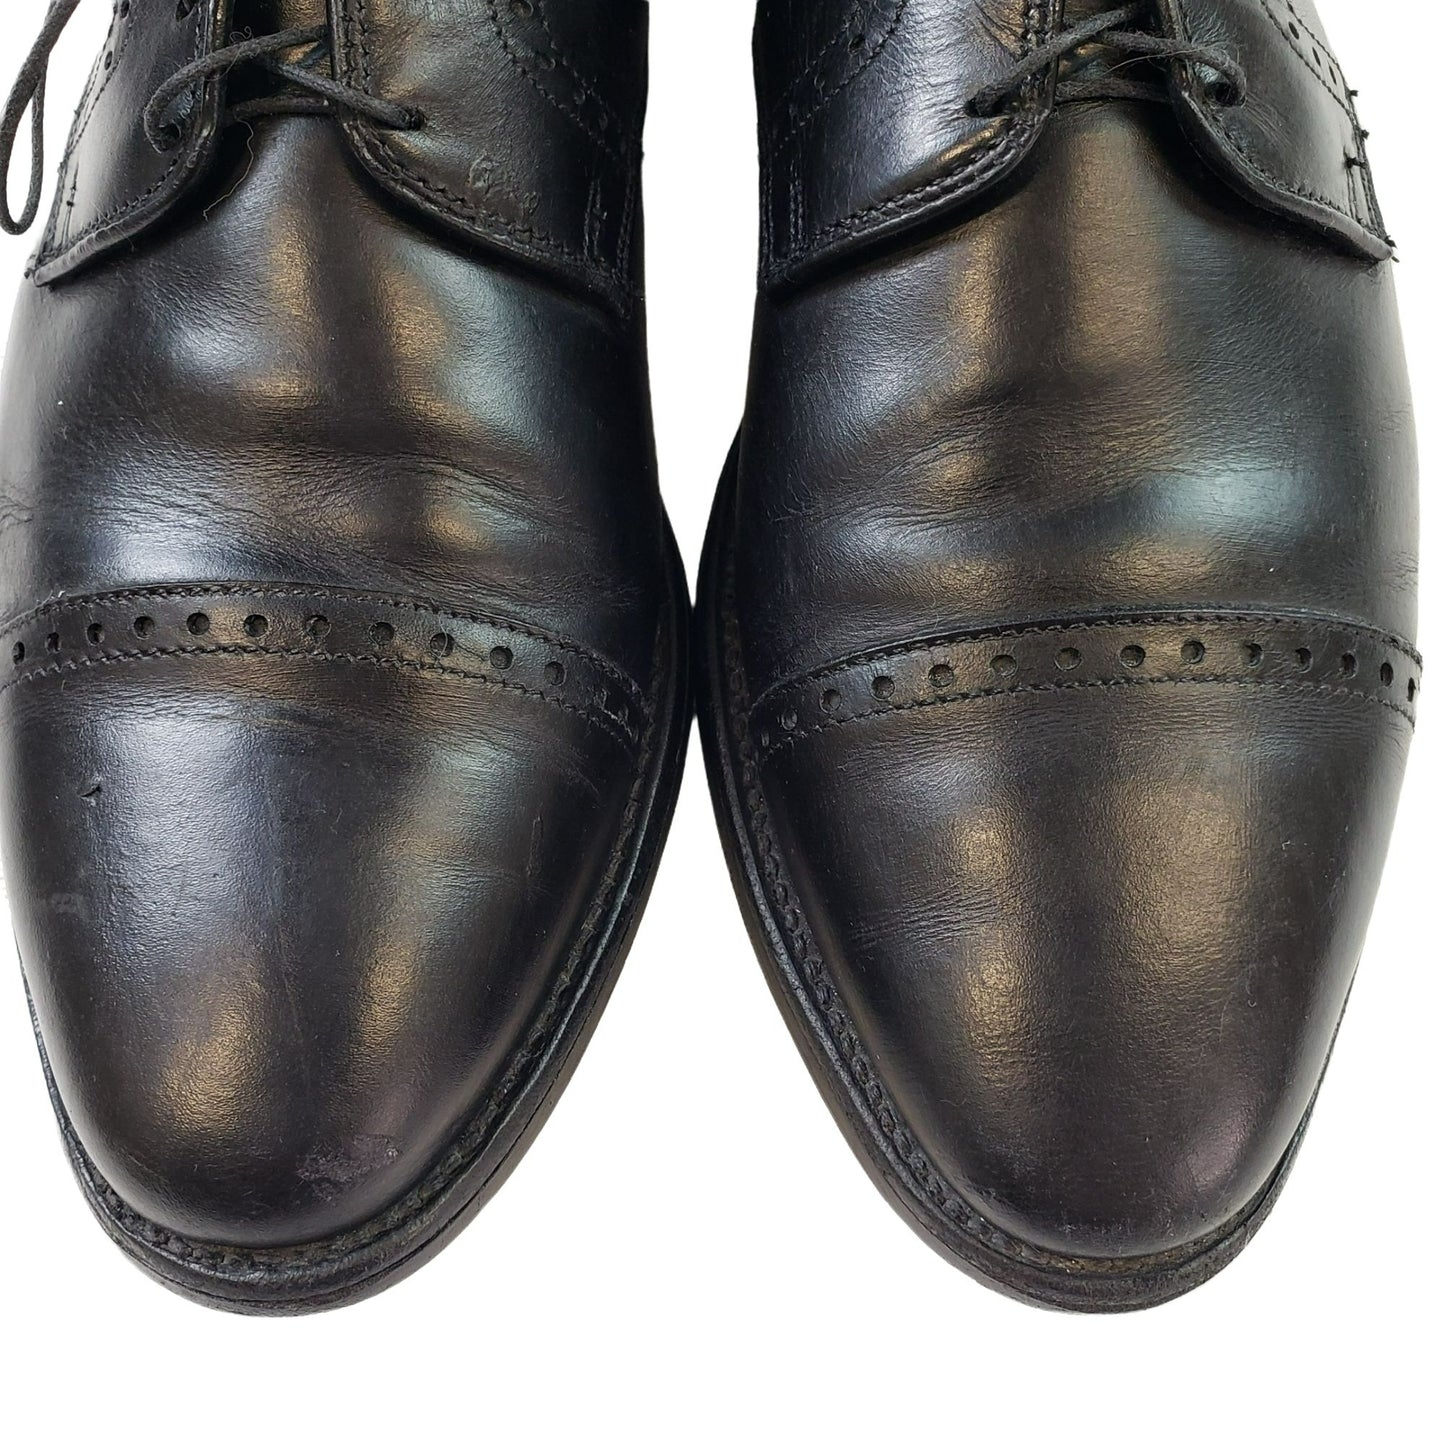 Allen Edmonds Fifth Avenue Cap Toe Oxford Dress Shoes Size 10.5